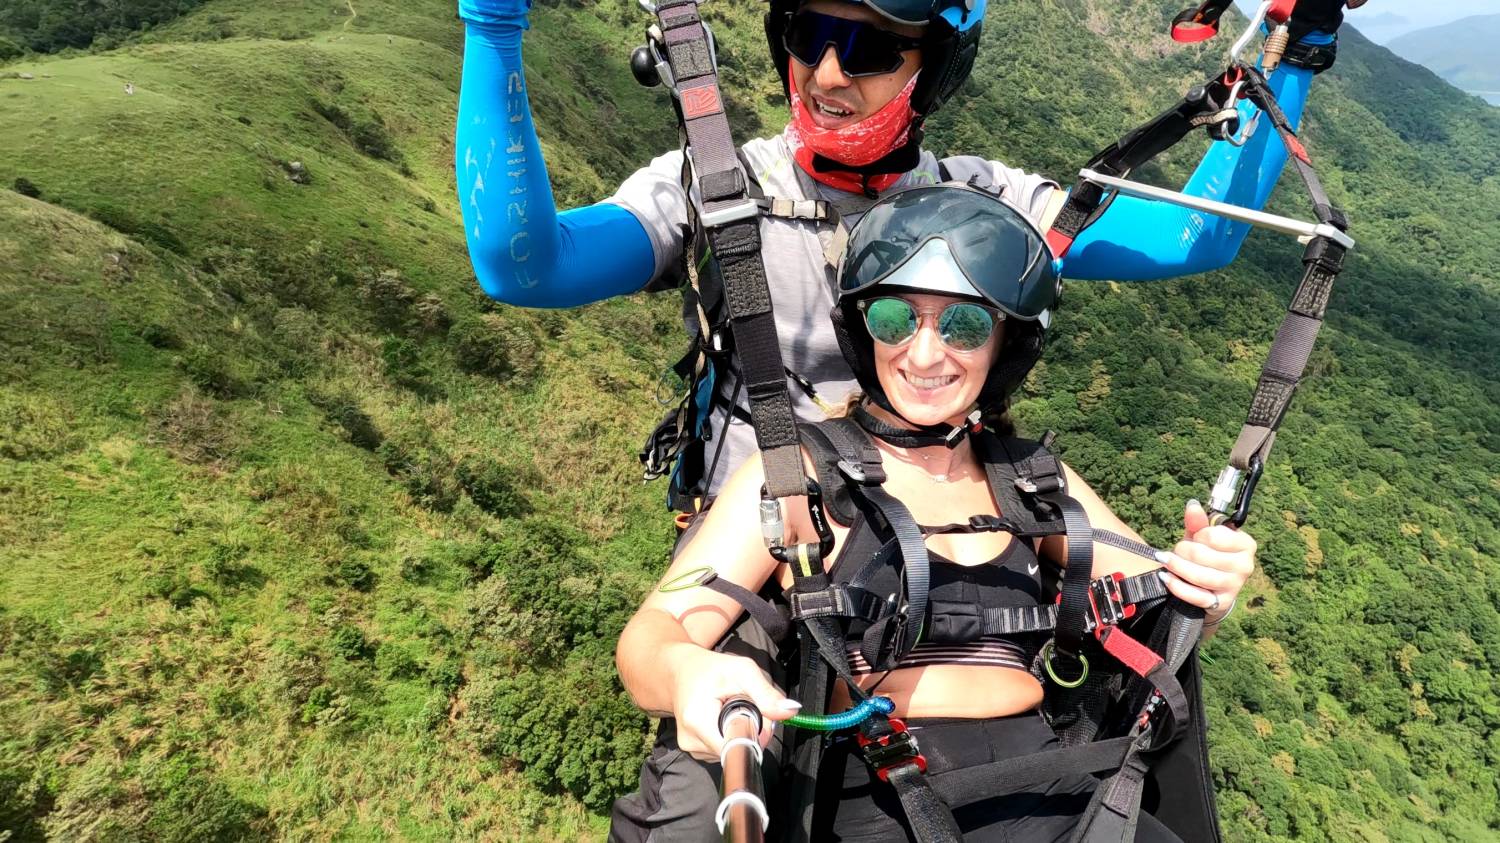 X Fly Paragliding 【特別體驗之選】香港滑翔傘體驗飛行 Tandem paragliding experience trial 10